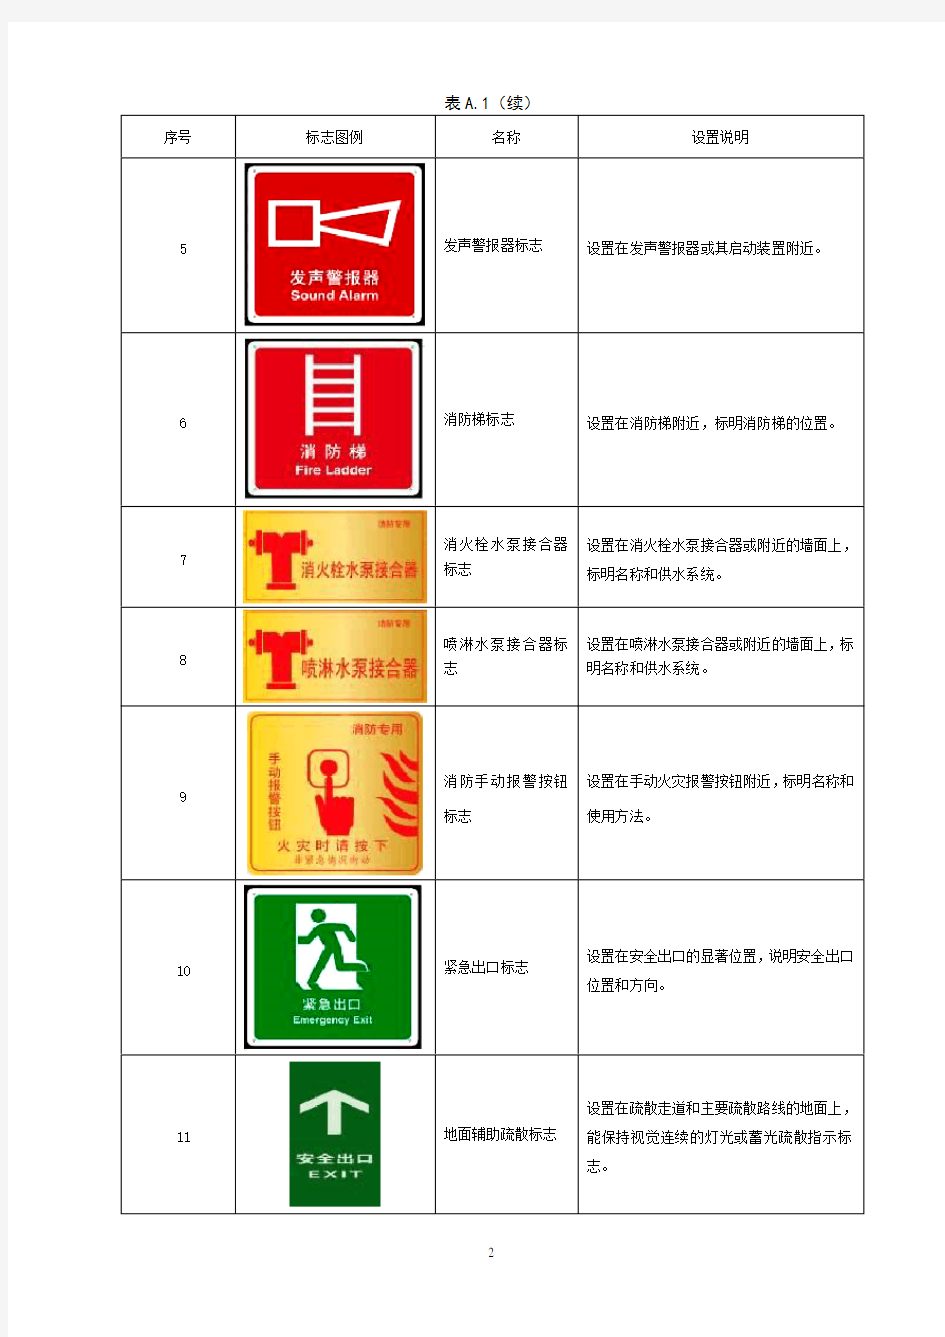 3消防设施标识(图例)